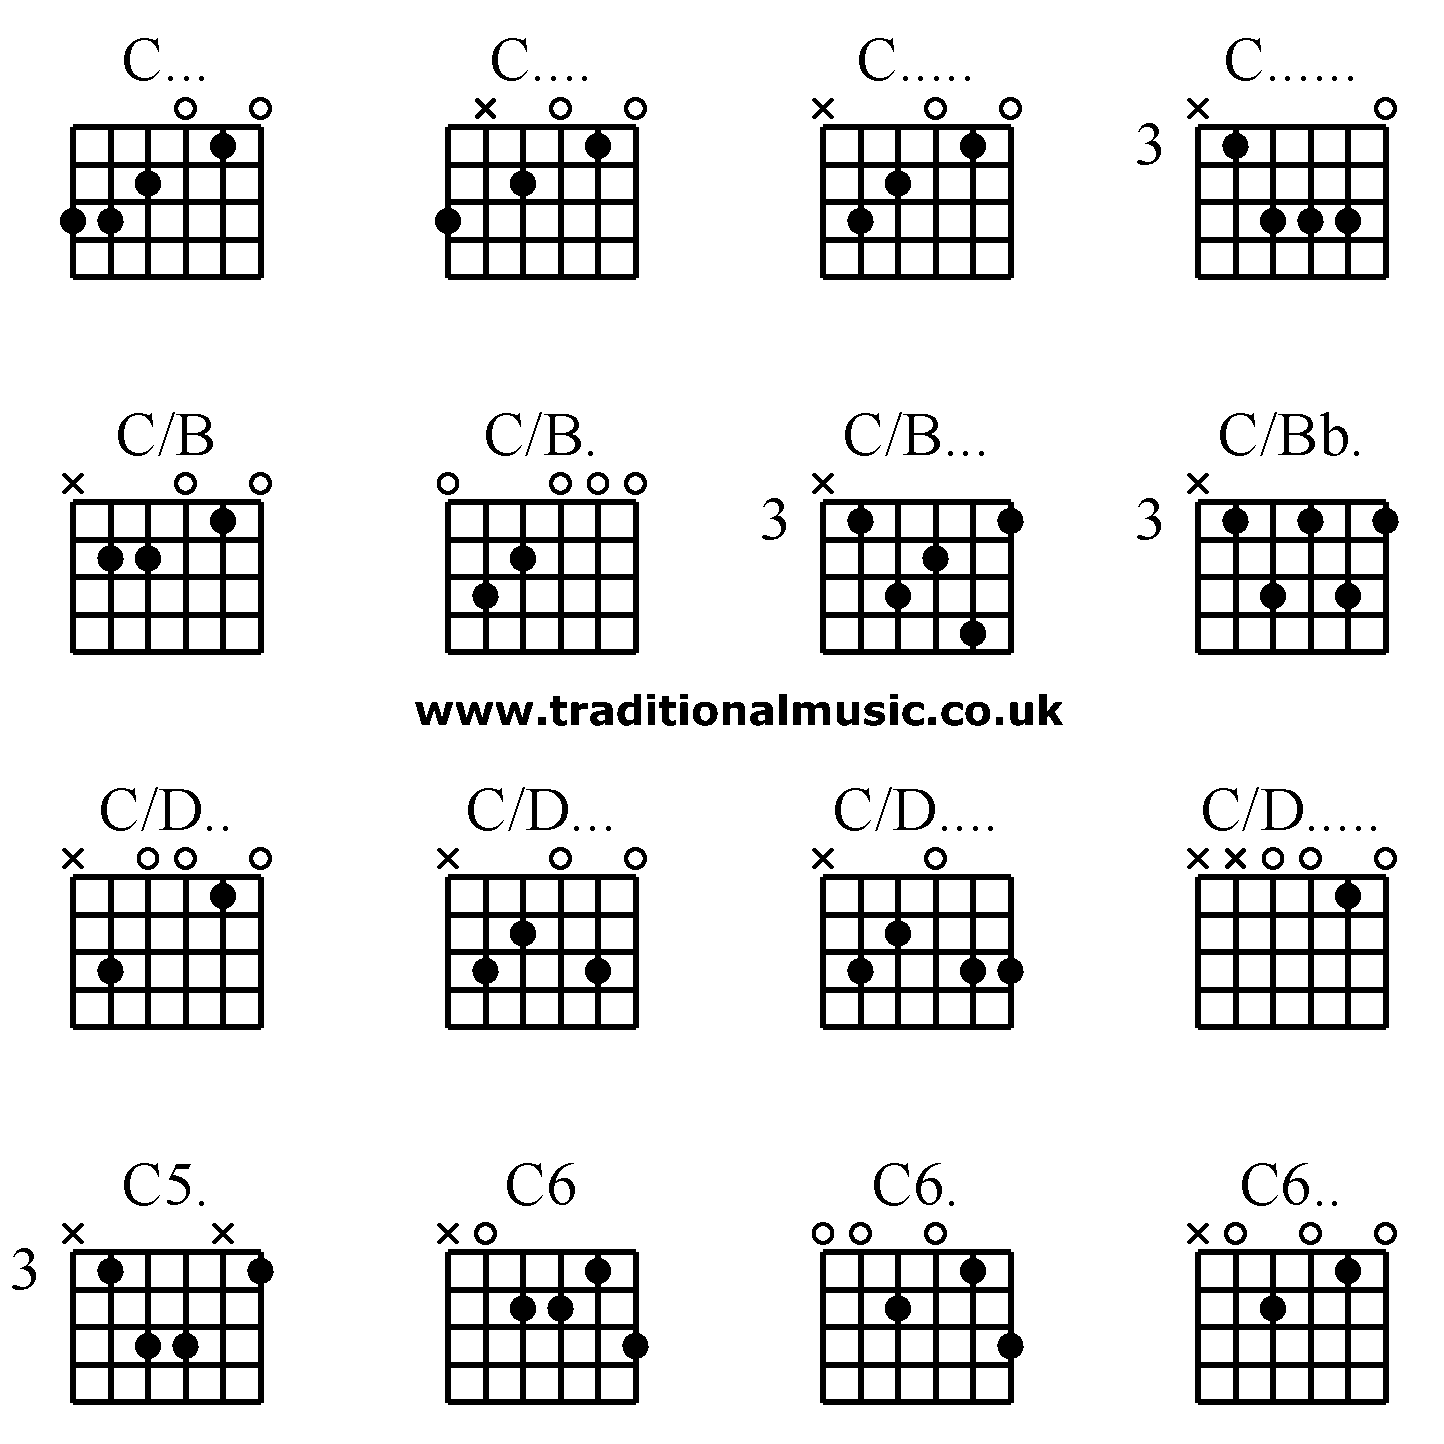 Advanced guitar chords:C... C.... C..... C......, C/B C/B. C/B... C/Bb., C/D.. C/D... C/D.... C/D....., C5. C6 C6. C6..